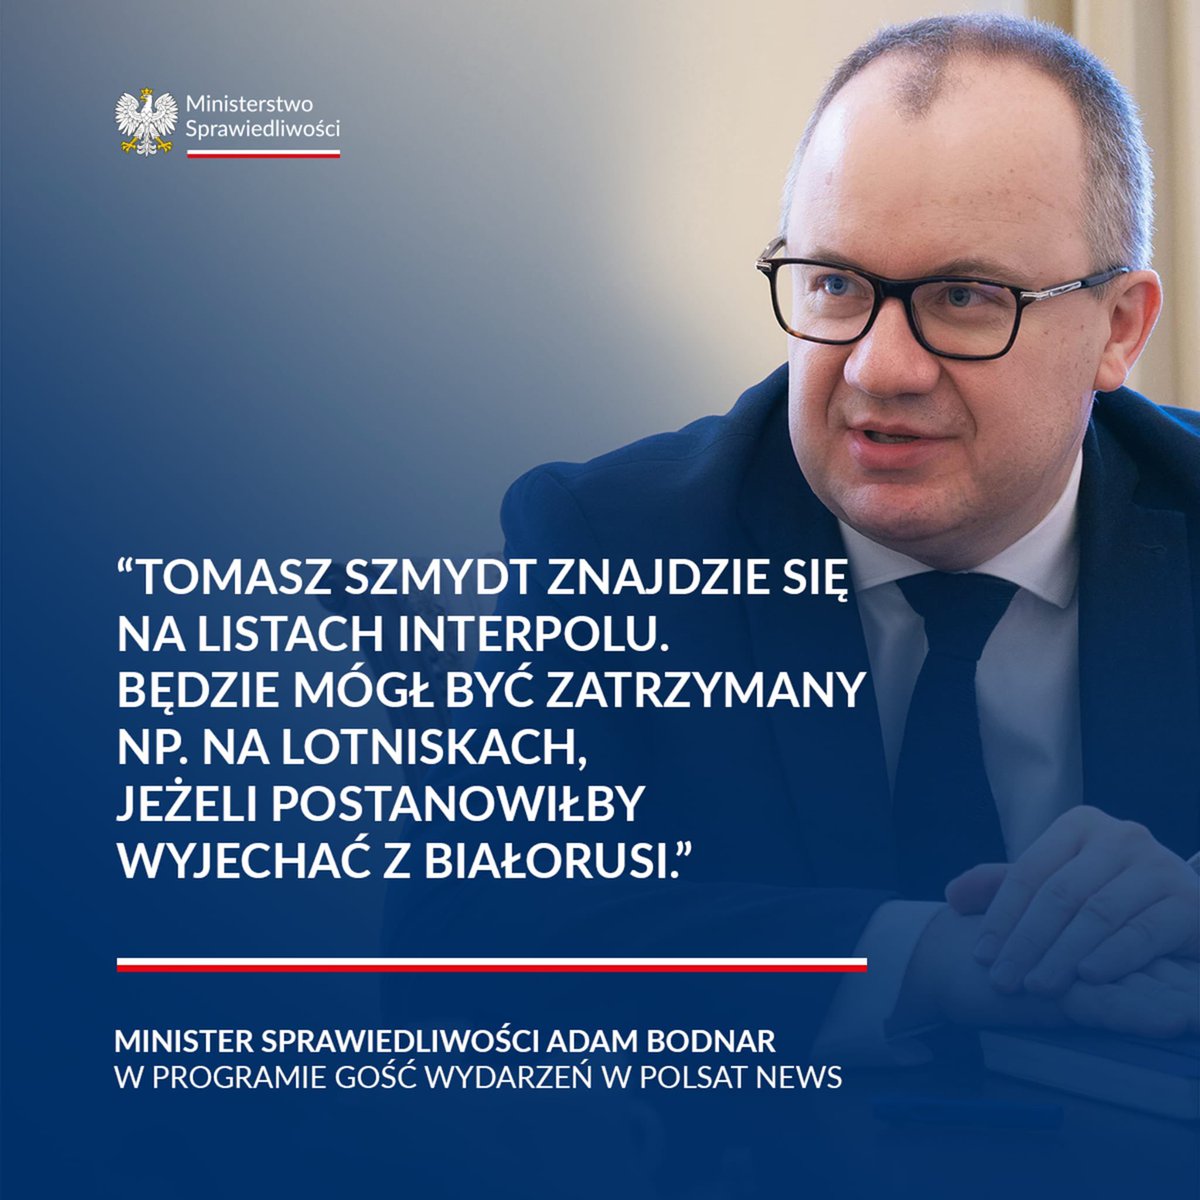 Tomasz Szmydt został pozbawiony immunitetu i statusu sędziowskiego. Prokuratura wystąpiła z wnioskiem o areszt i jeżeli sąd uzna, a myślę, że nie ma, co do tego wątpliwości, to daje podstawę do wydania listu gończego - mówił Minister @Adbodnar w Gościu Wydarzeń w @PolsatNewsPL